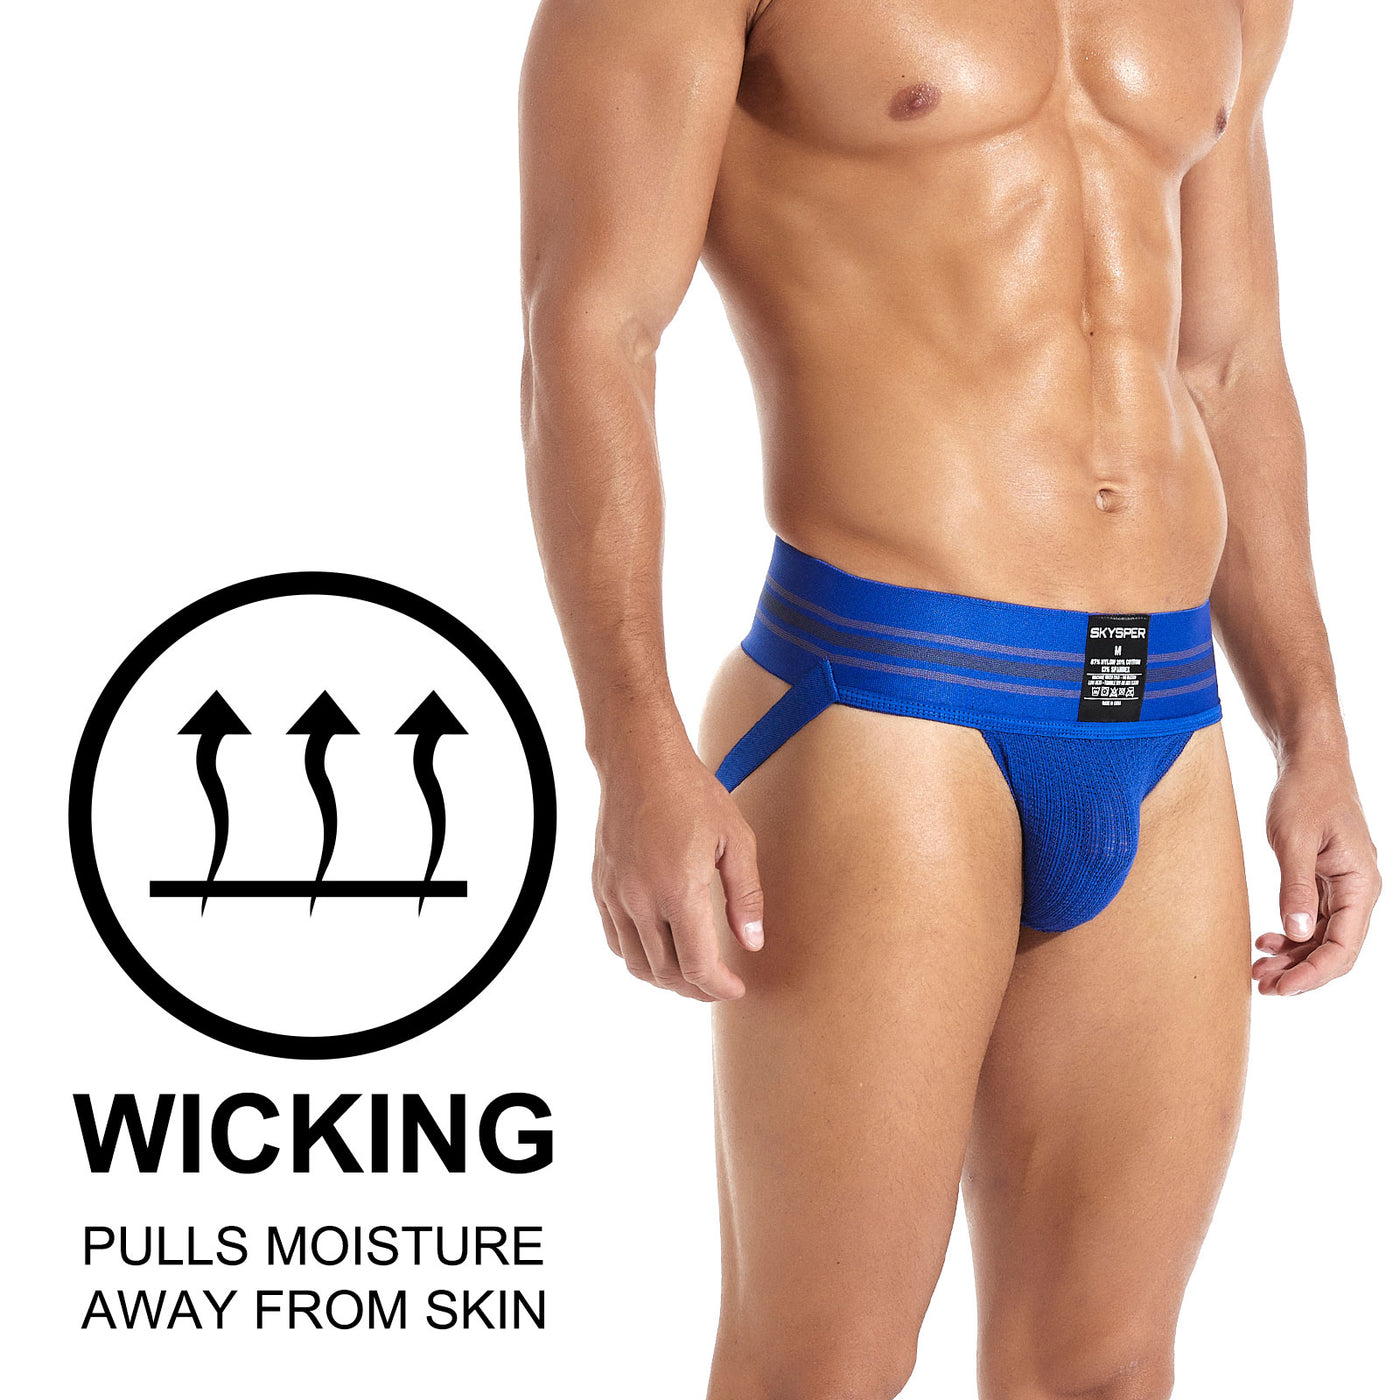 AQ02 - SKYSPER Men's Jockstrap Underwear Athletic Supporter